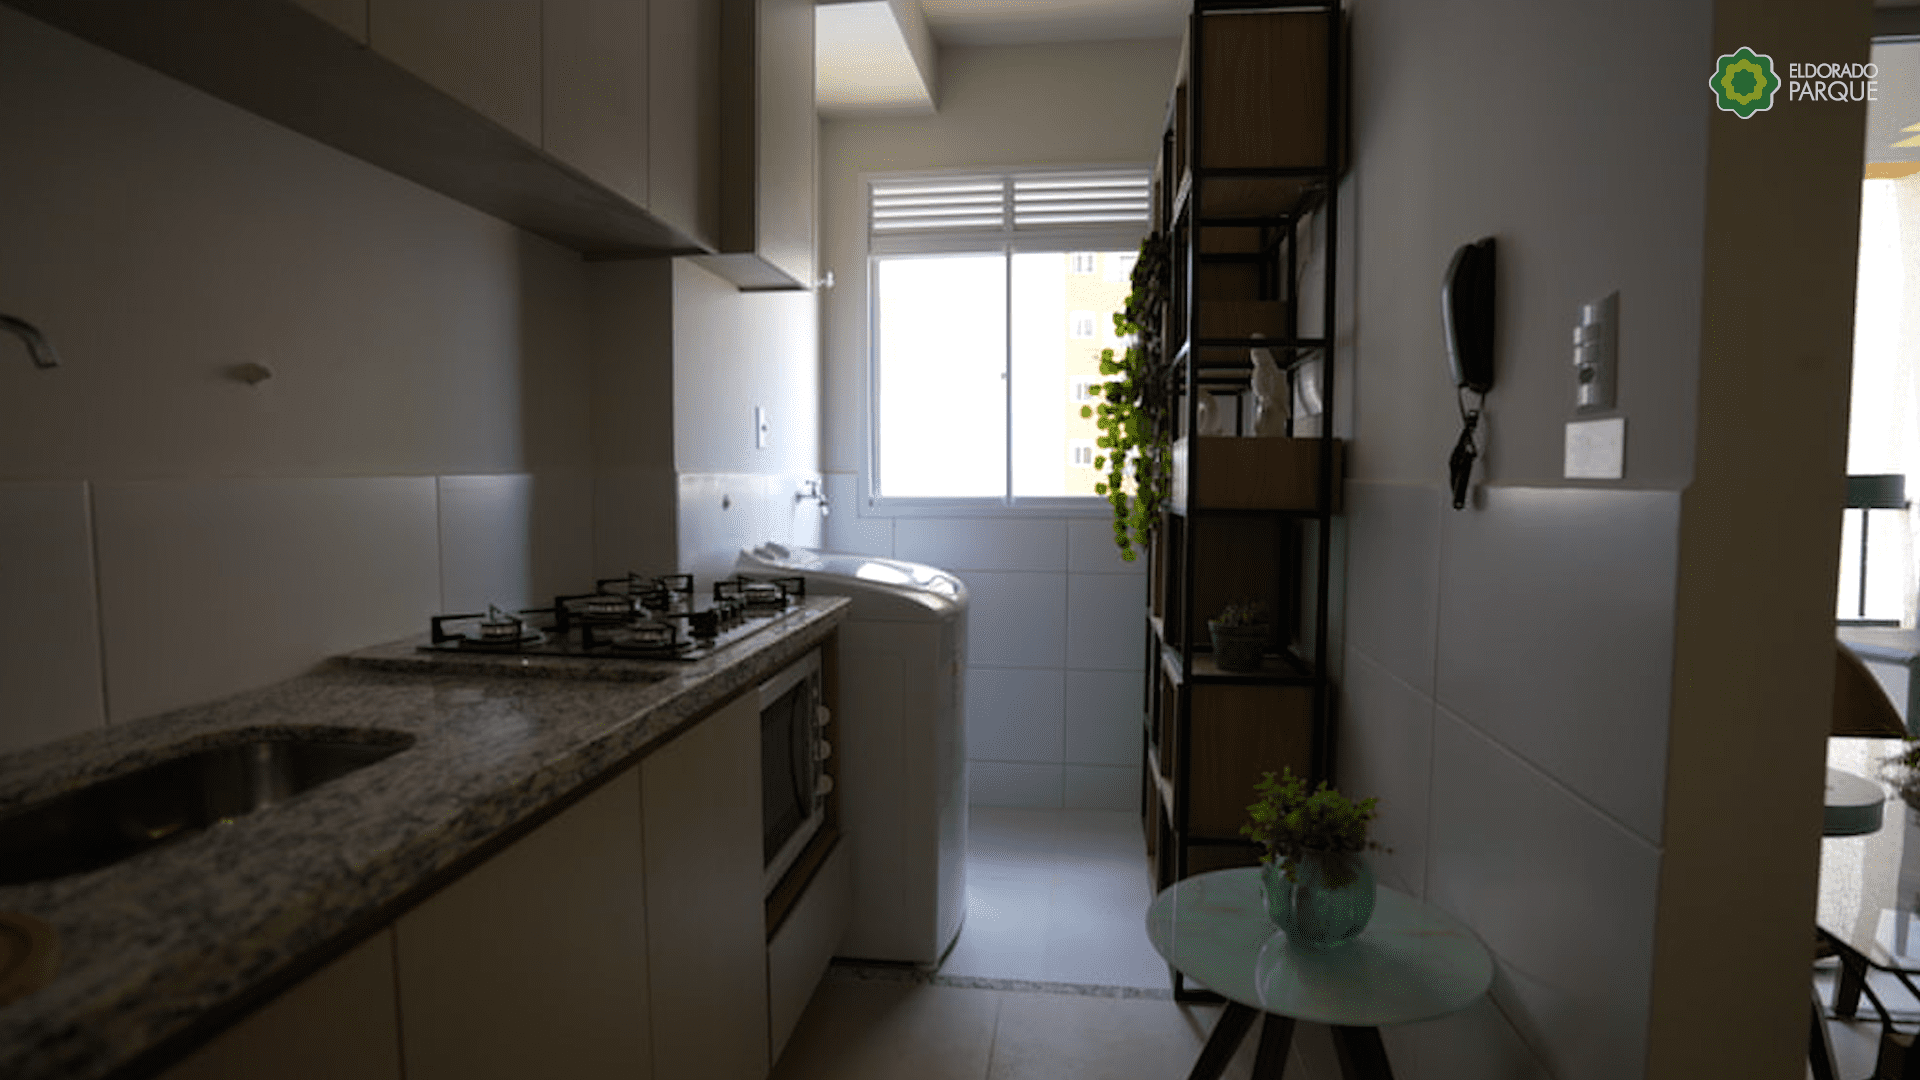 Apartamento no Setor Eldorado em Goiânia - imobiliária em Goiânia - Imóveis Cláudia coelho